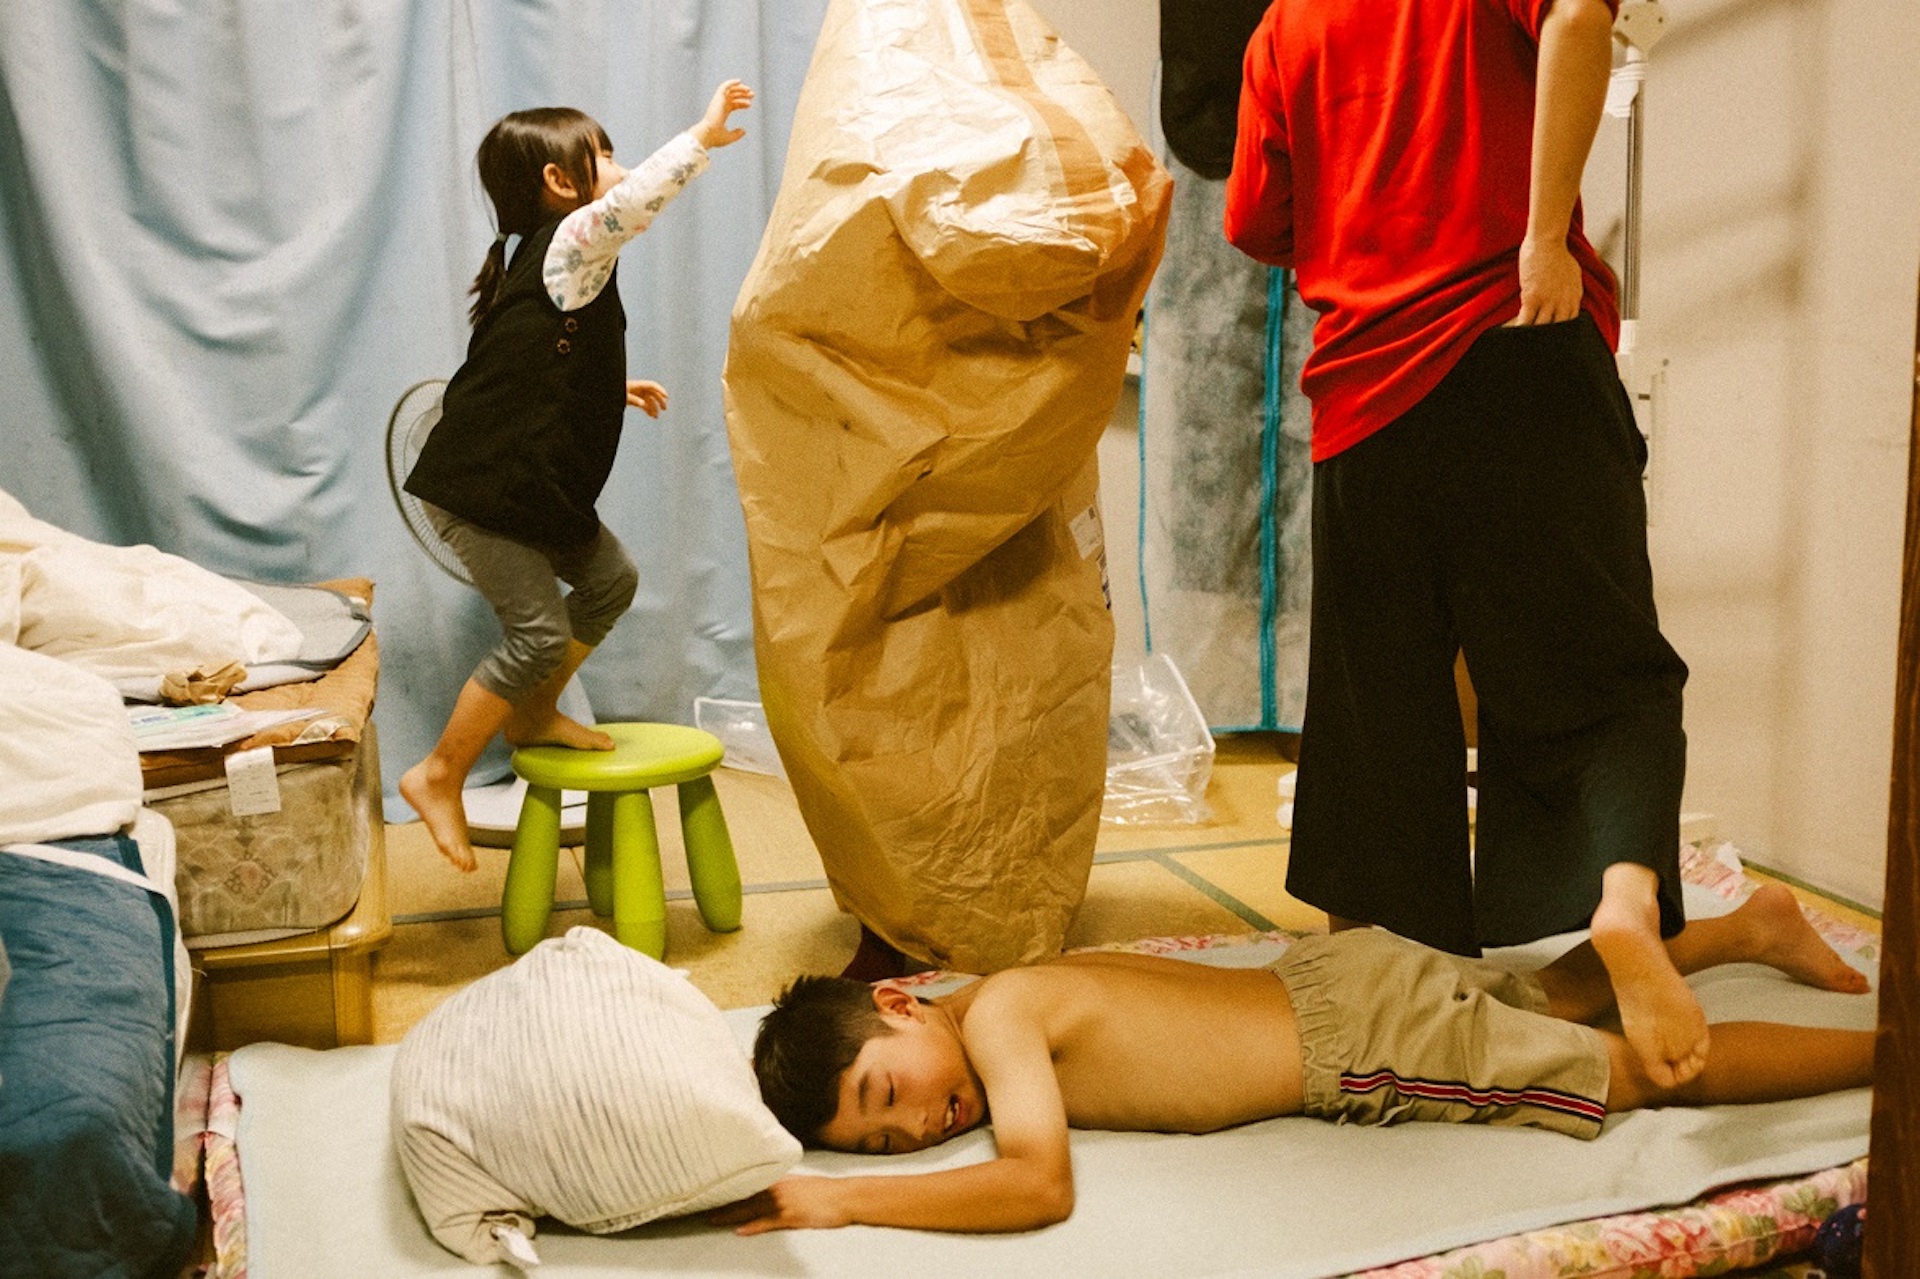 Jun Aihara FUJIFILM X100F撮影の布団にうつ伏せになる上裸の子供とそれをまたぐ大人とその後ろで椅子に登る子供